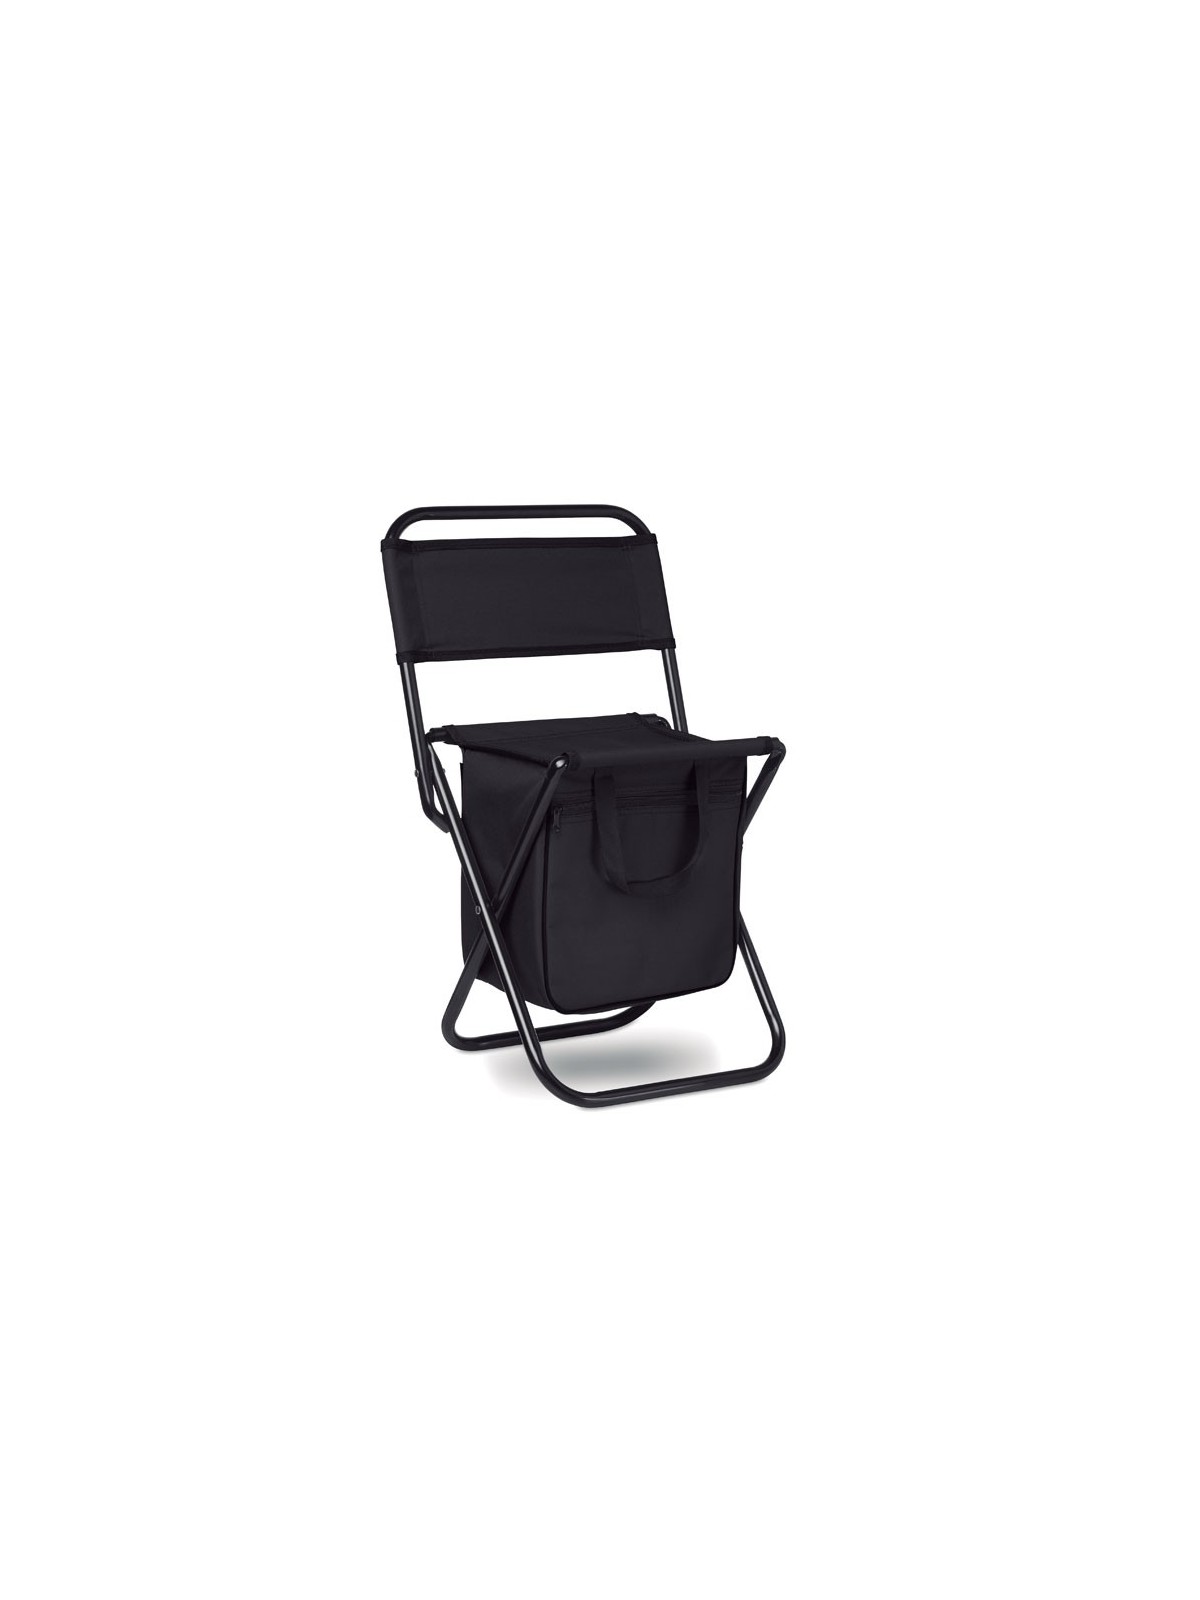 42-376 Chaise avec sac isotherme personnalisé